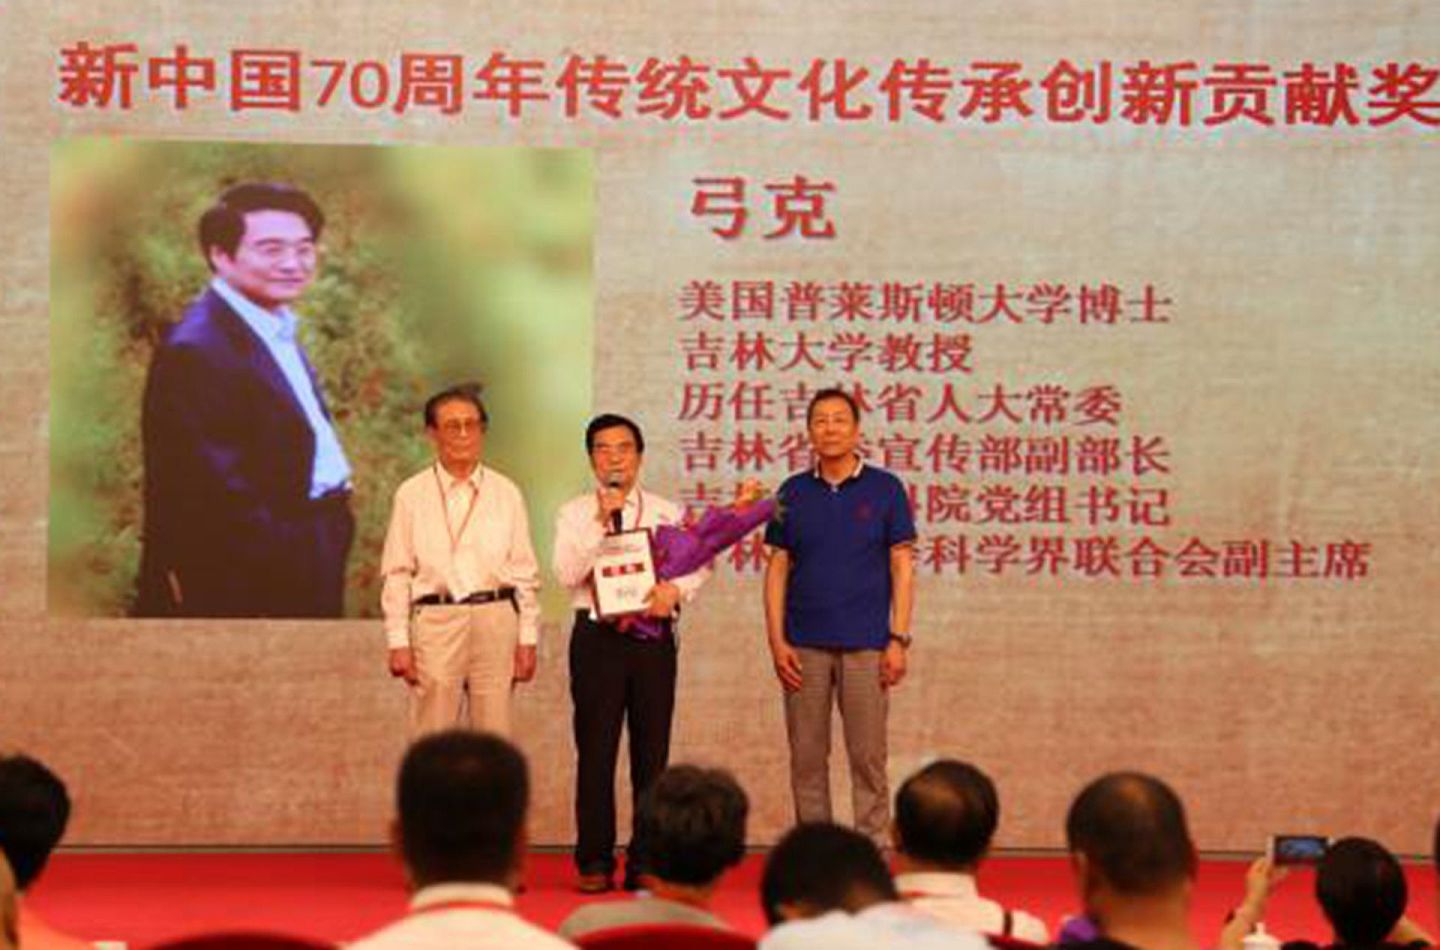 弓克出席北京一家文化传媒公司主办的活动。（微博@茶色文章）